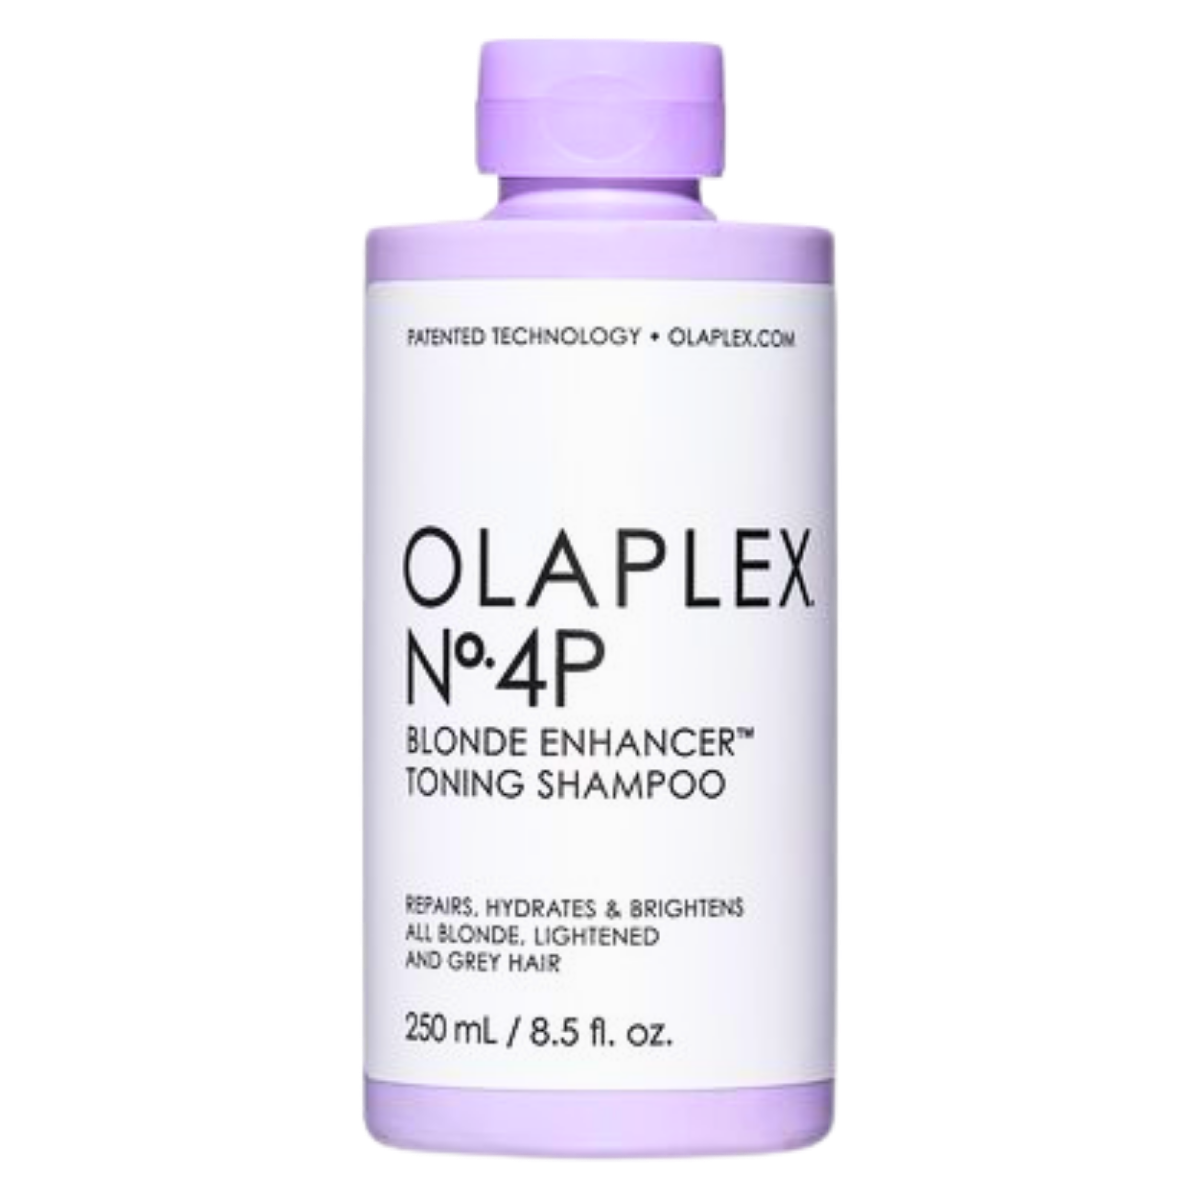 שמפו OLAPLEX NO 4P אולפלקס להעצמת הגוון והברק לשיער בלונדיני ולשיער שיבה 250 מ"ל